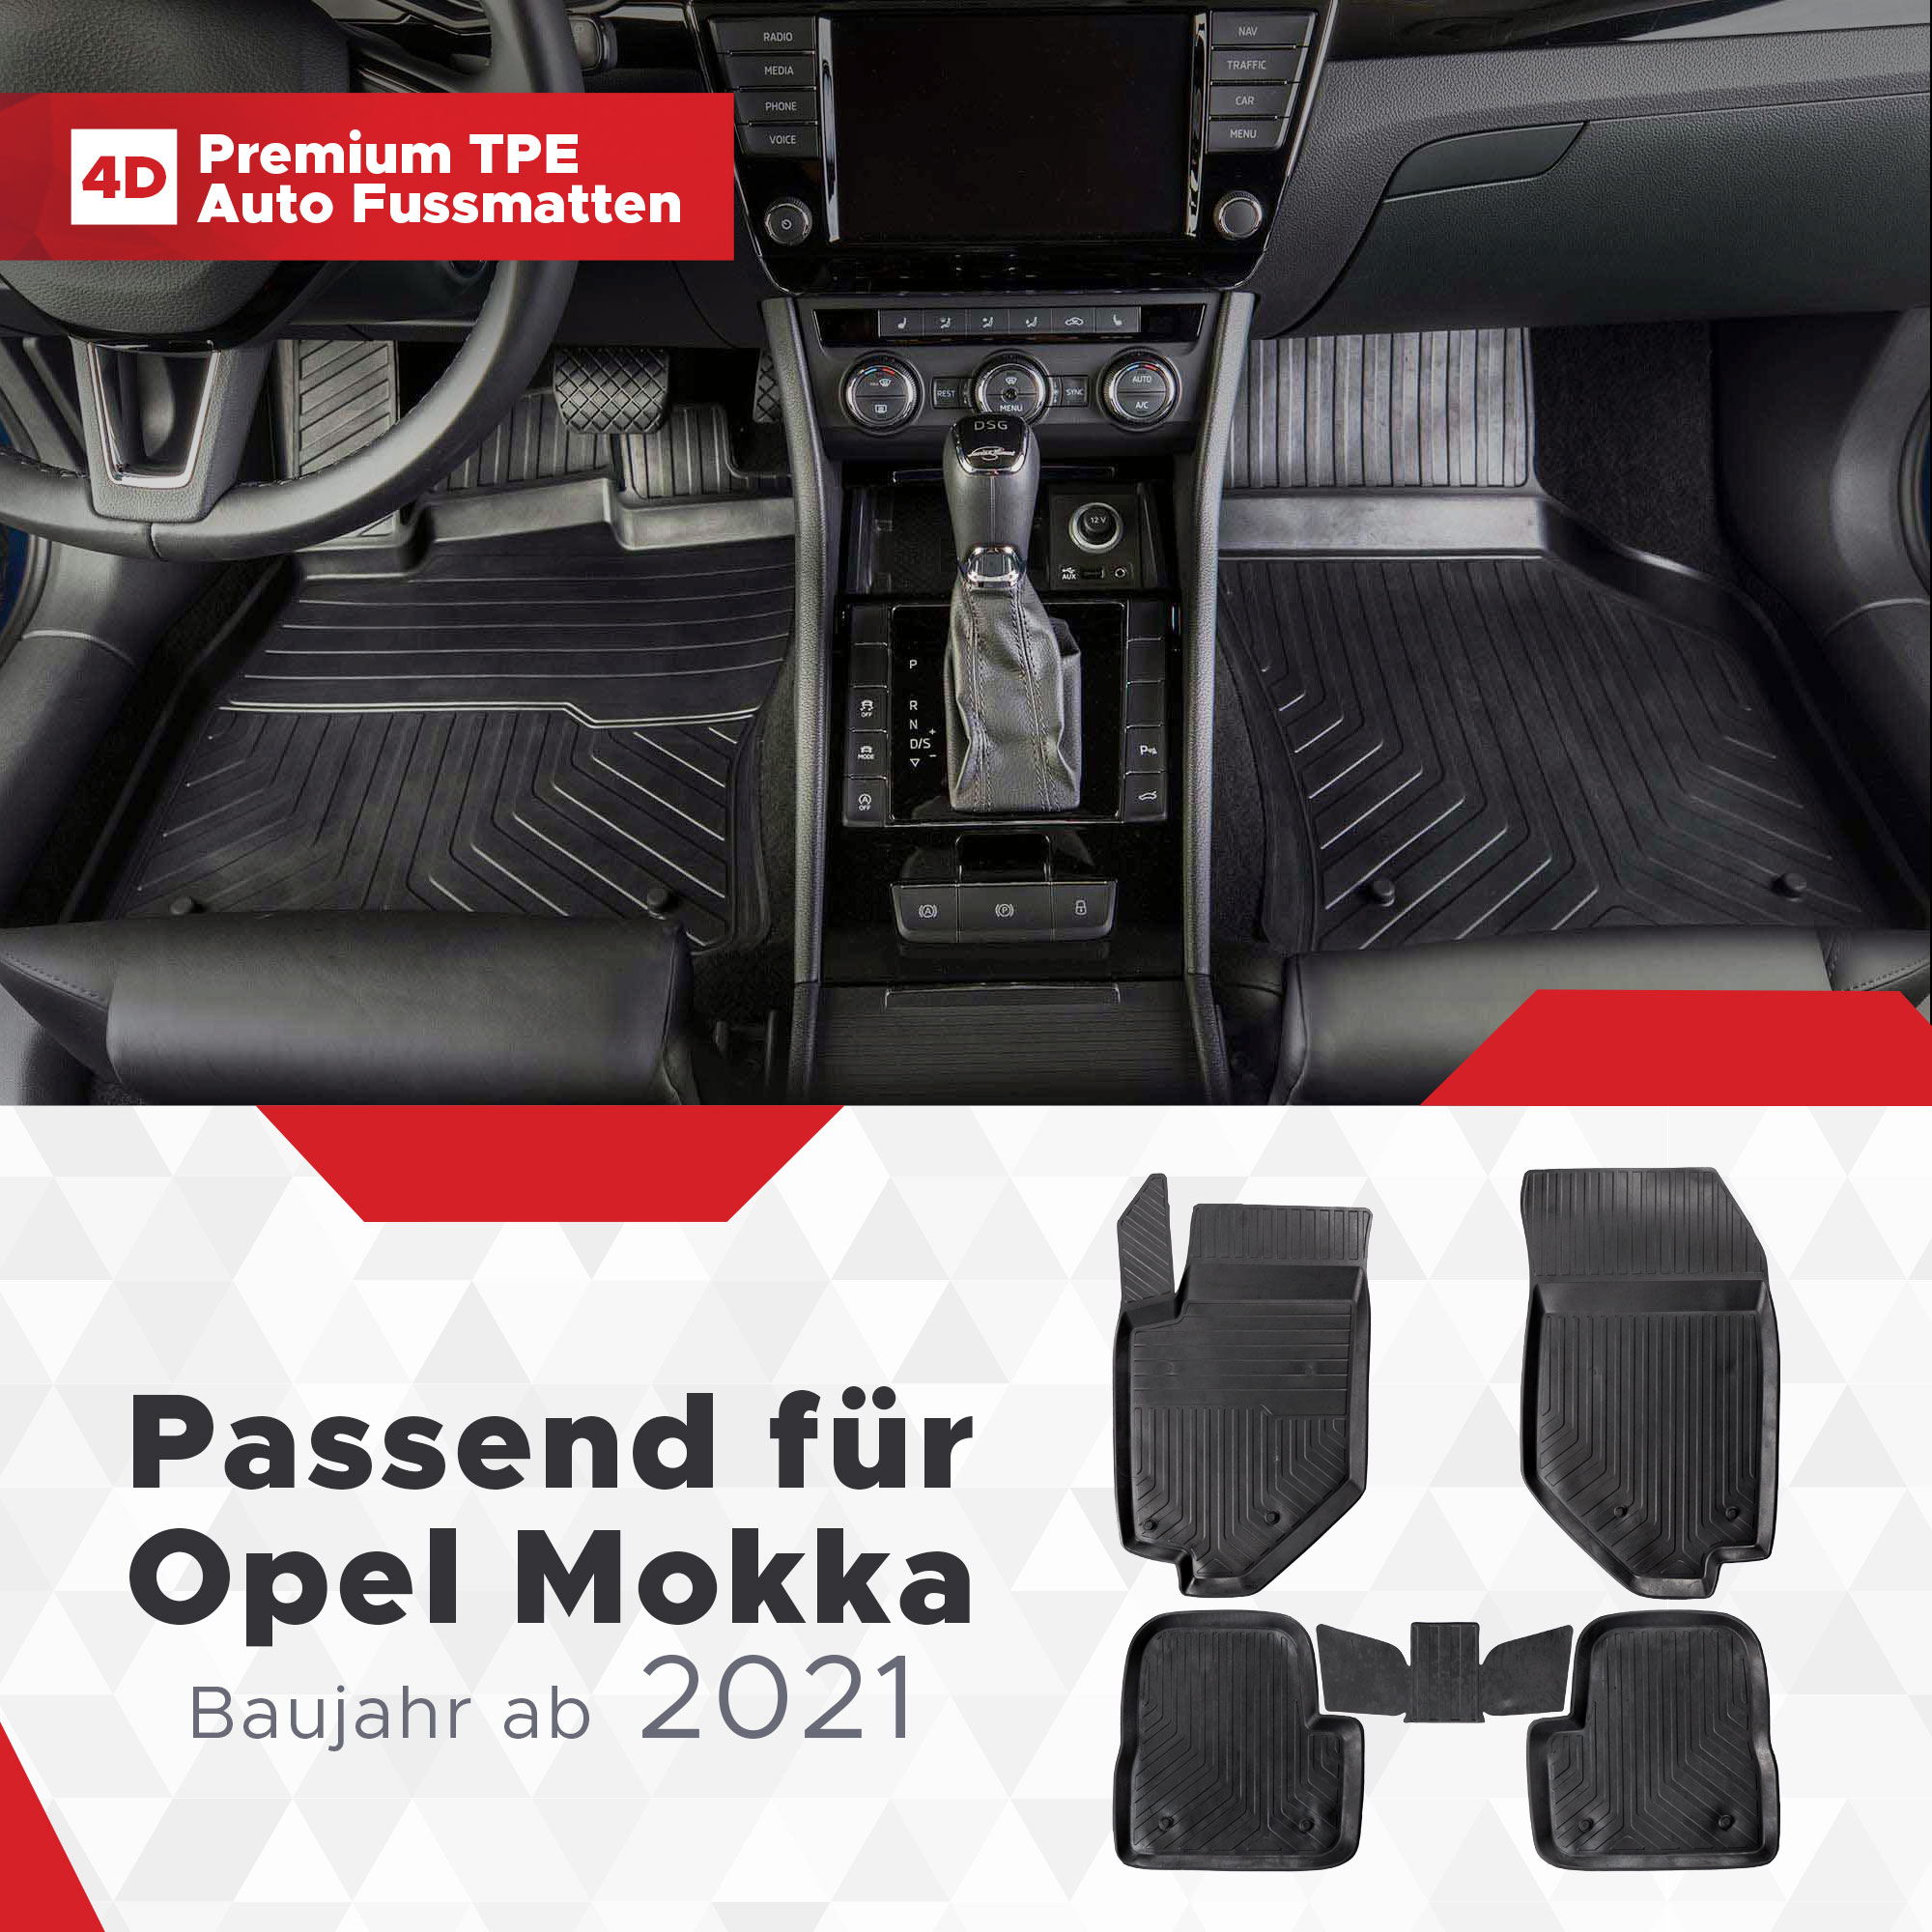 4D Opel Mokka Fussmatten ab 2021- Gummimatten Bj